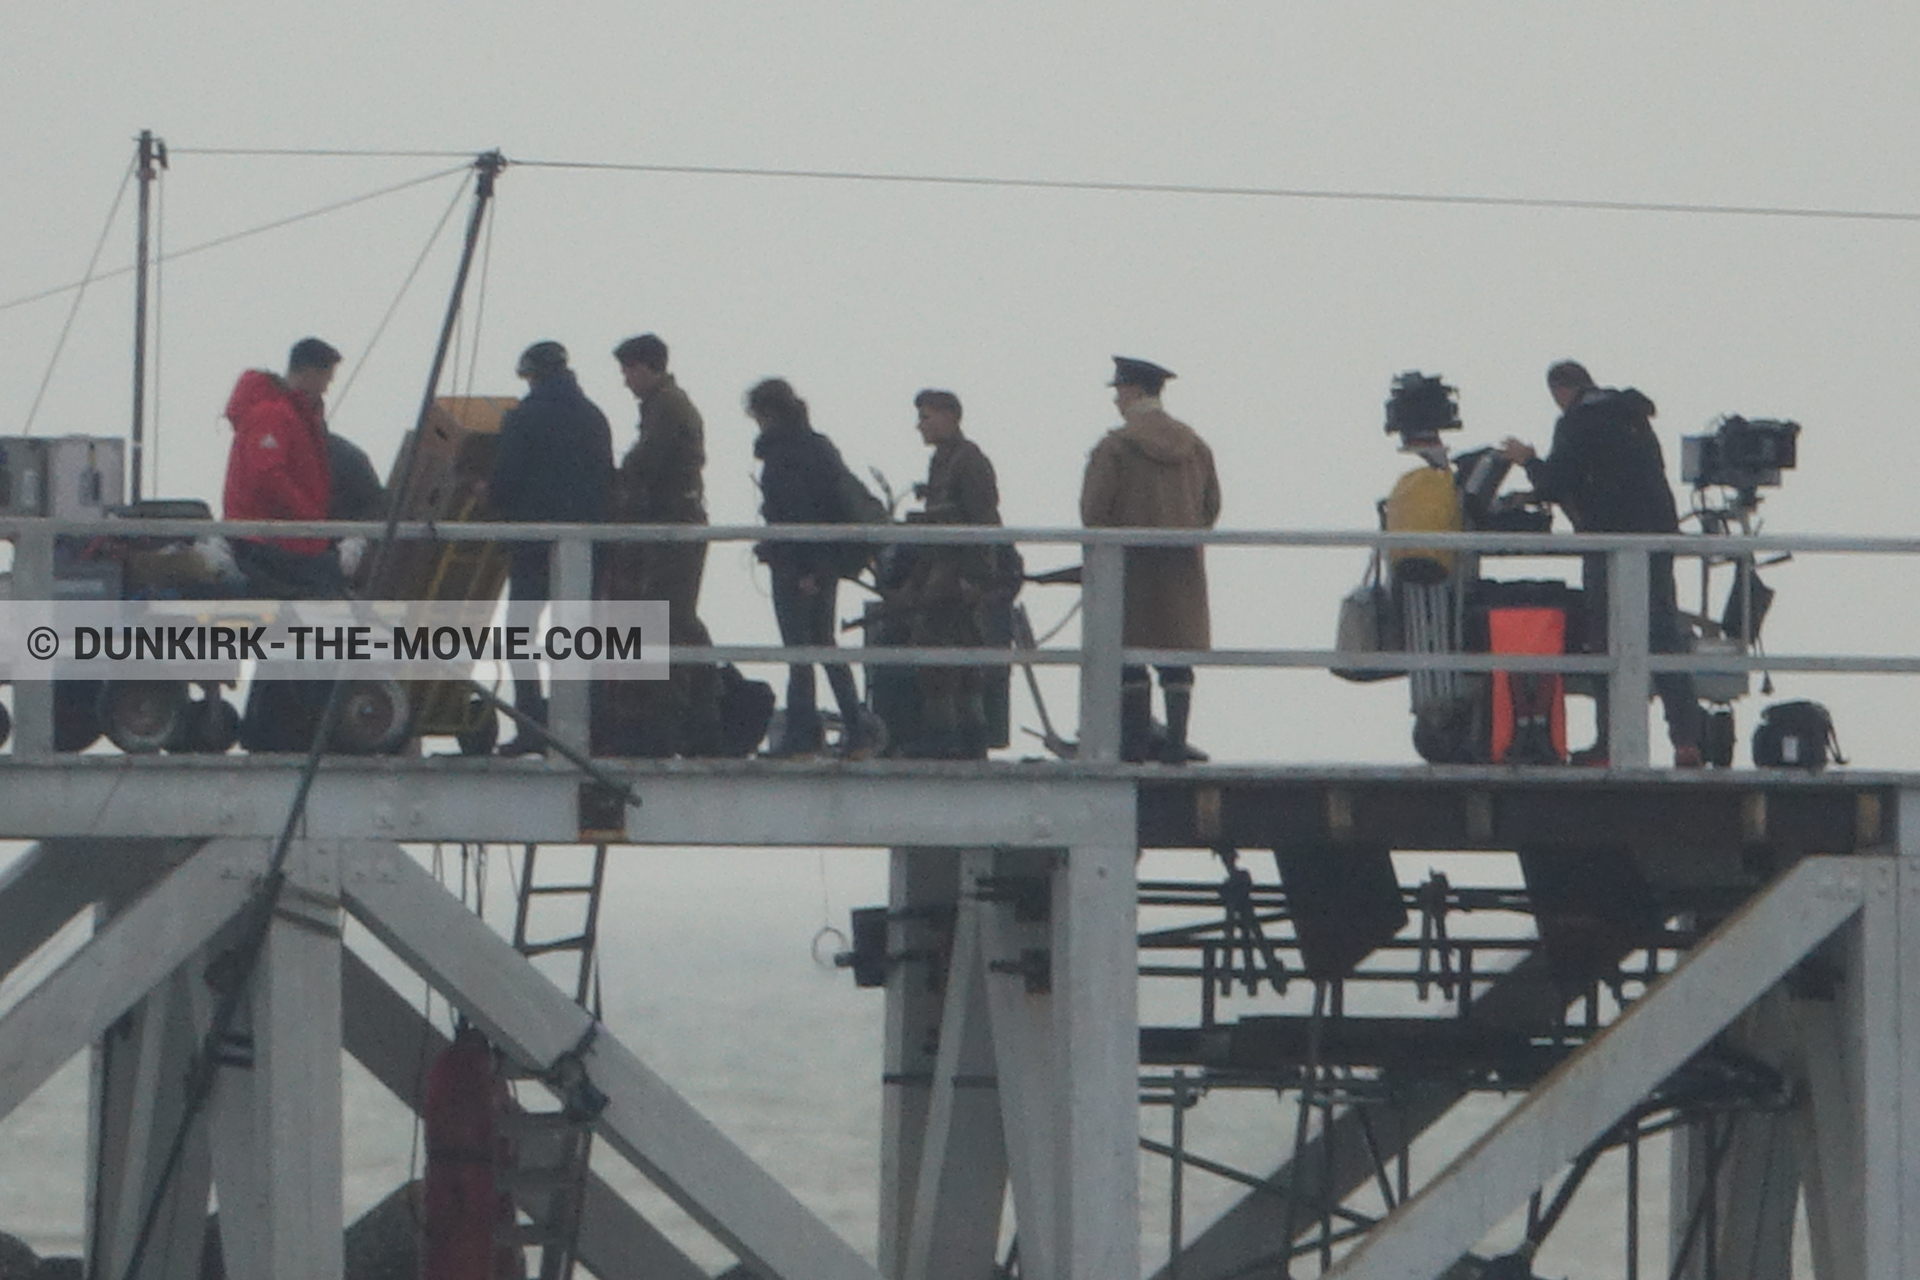 Photo avec caméra IMAX, ciel gris, figurants, jetée EST, équipe technique,  des dessous du Film Dunkerque de Nolan